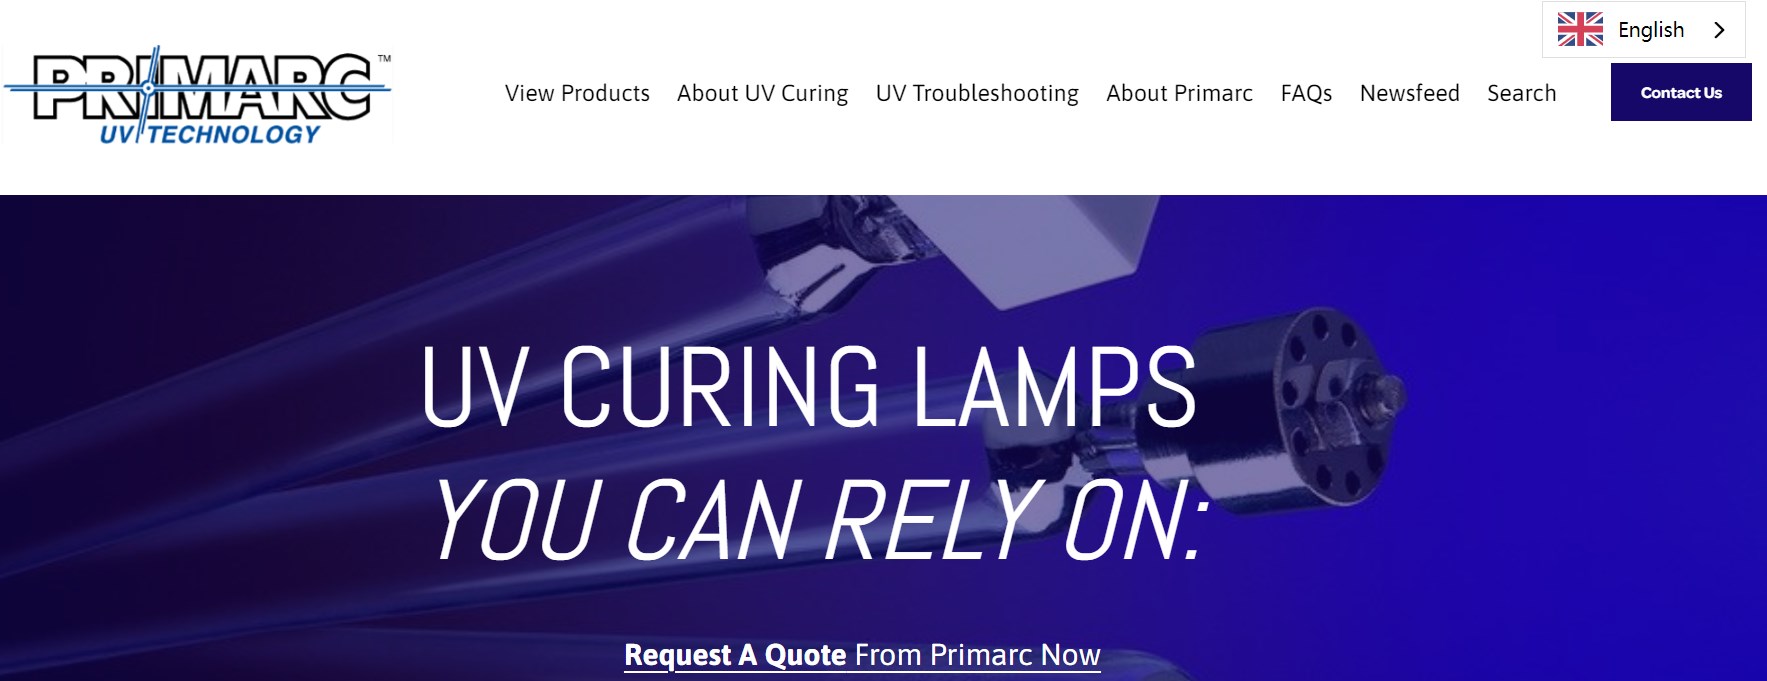 PRIMARC curing lamp manufacturer